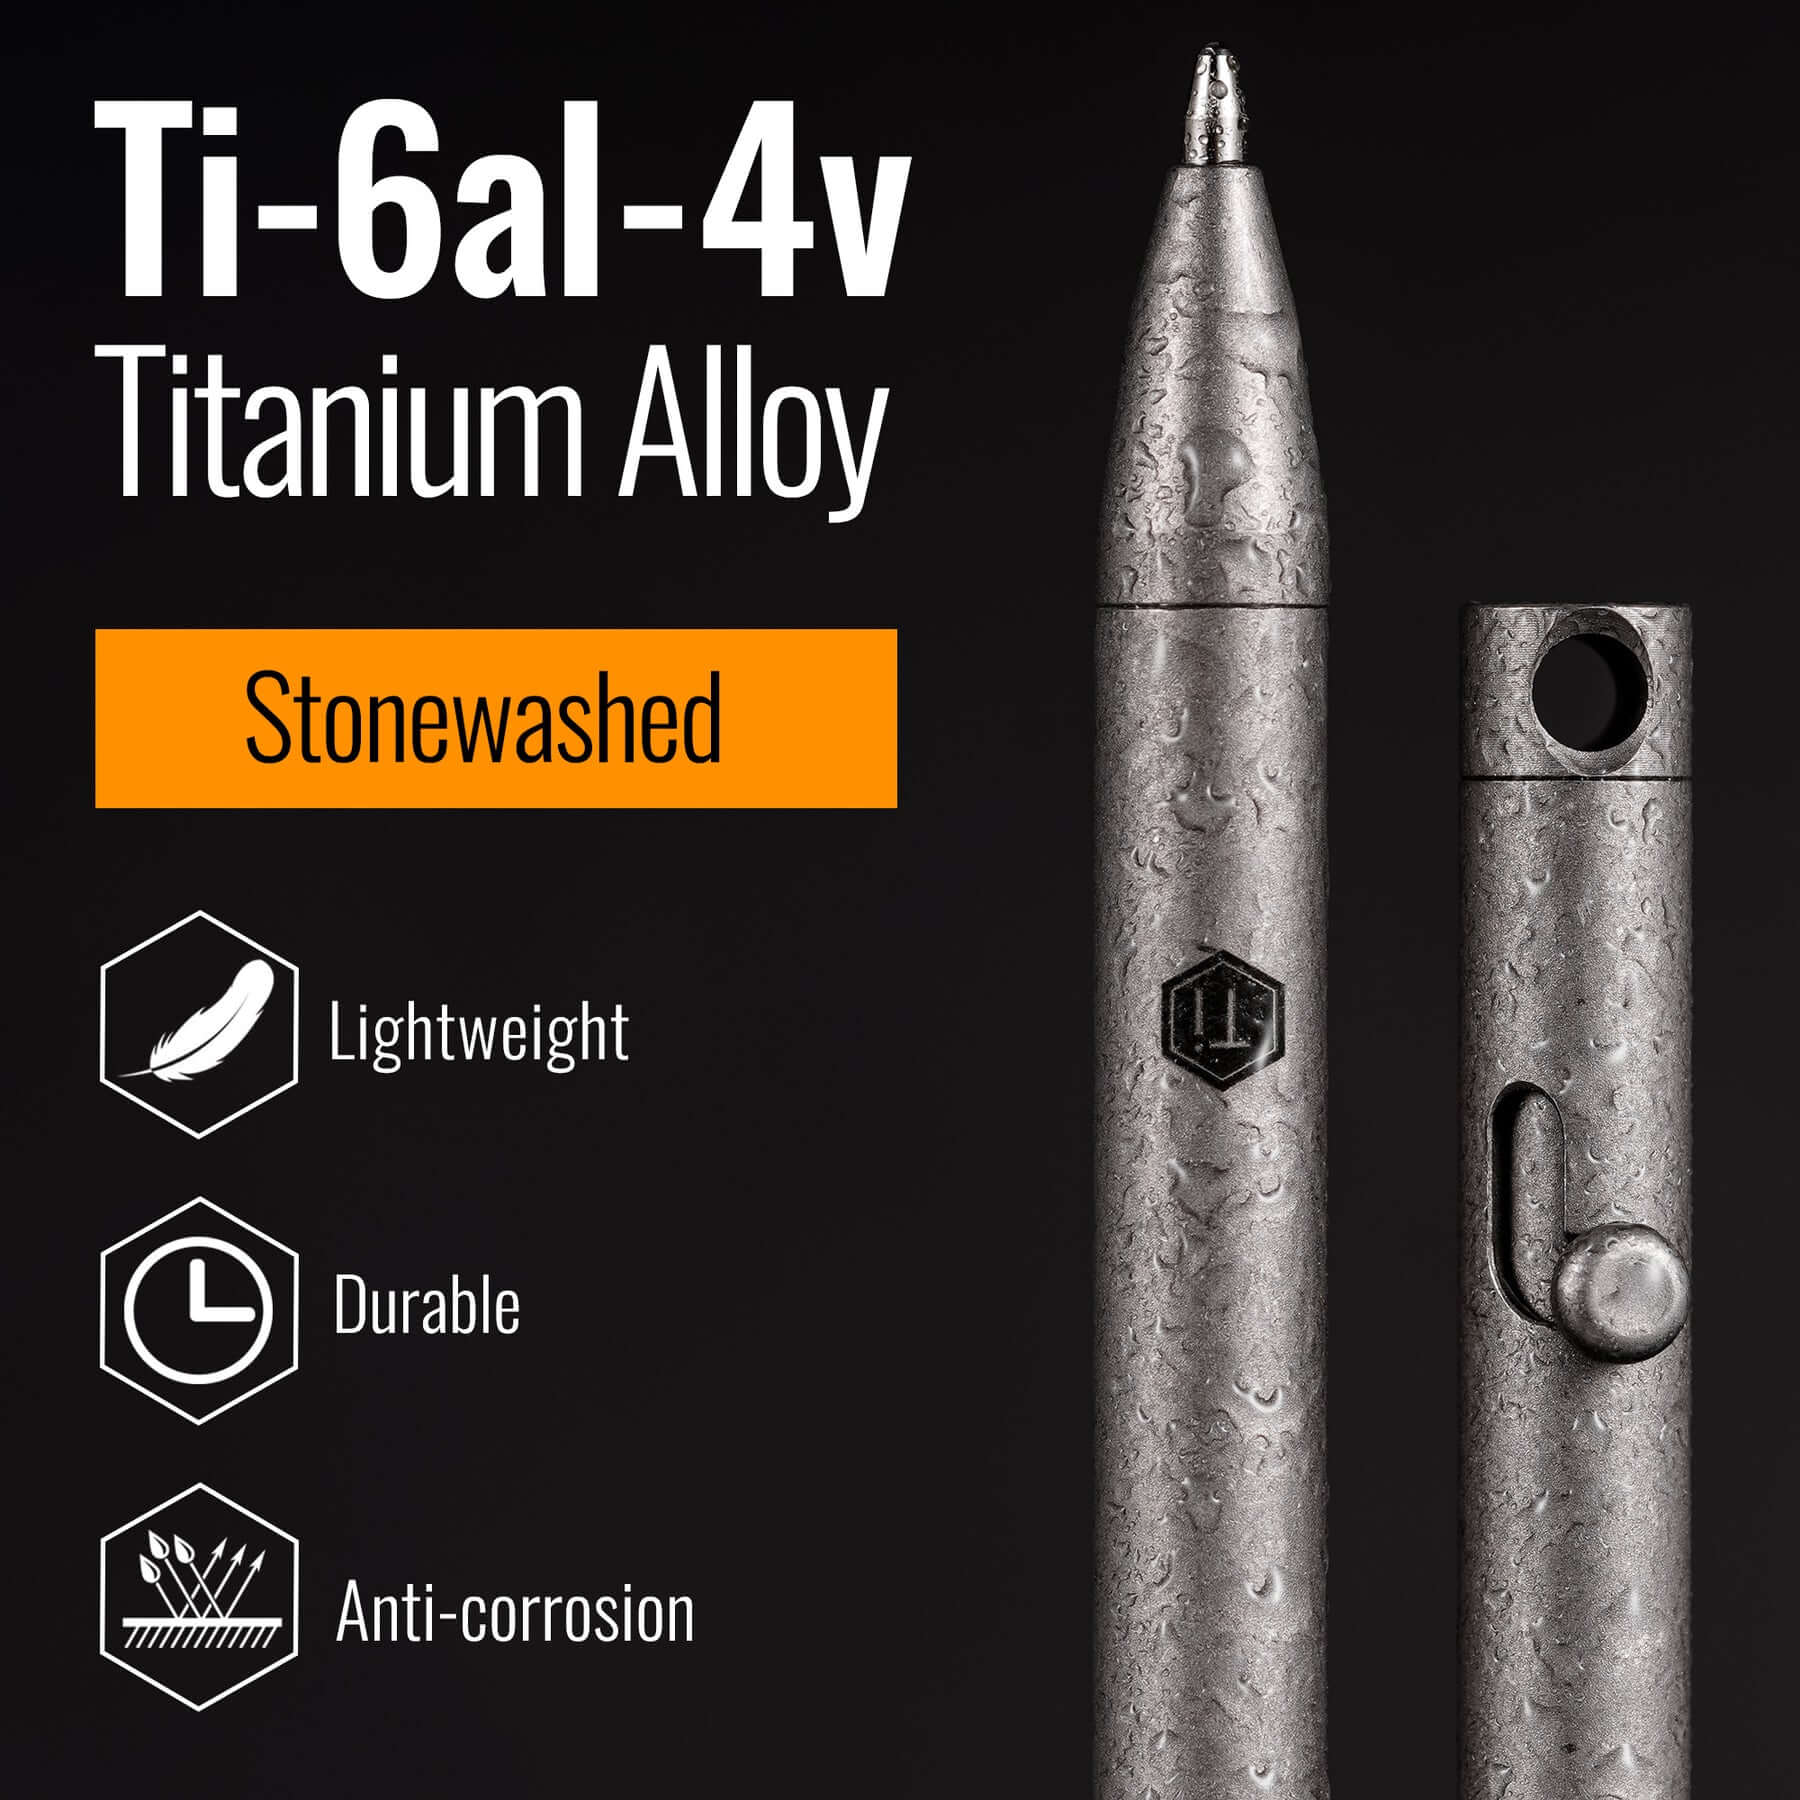 KP00 Titanium Alloy Bolt Action Pen